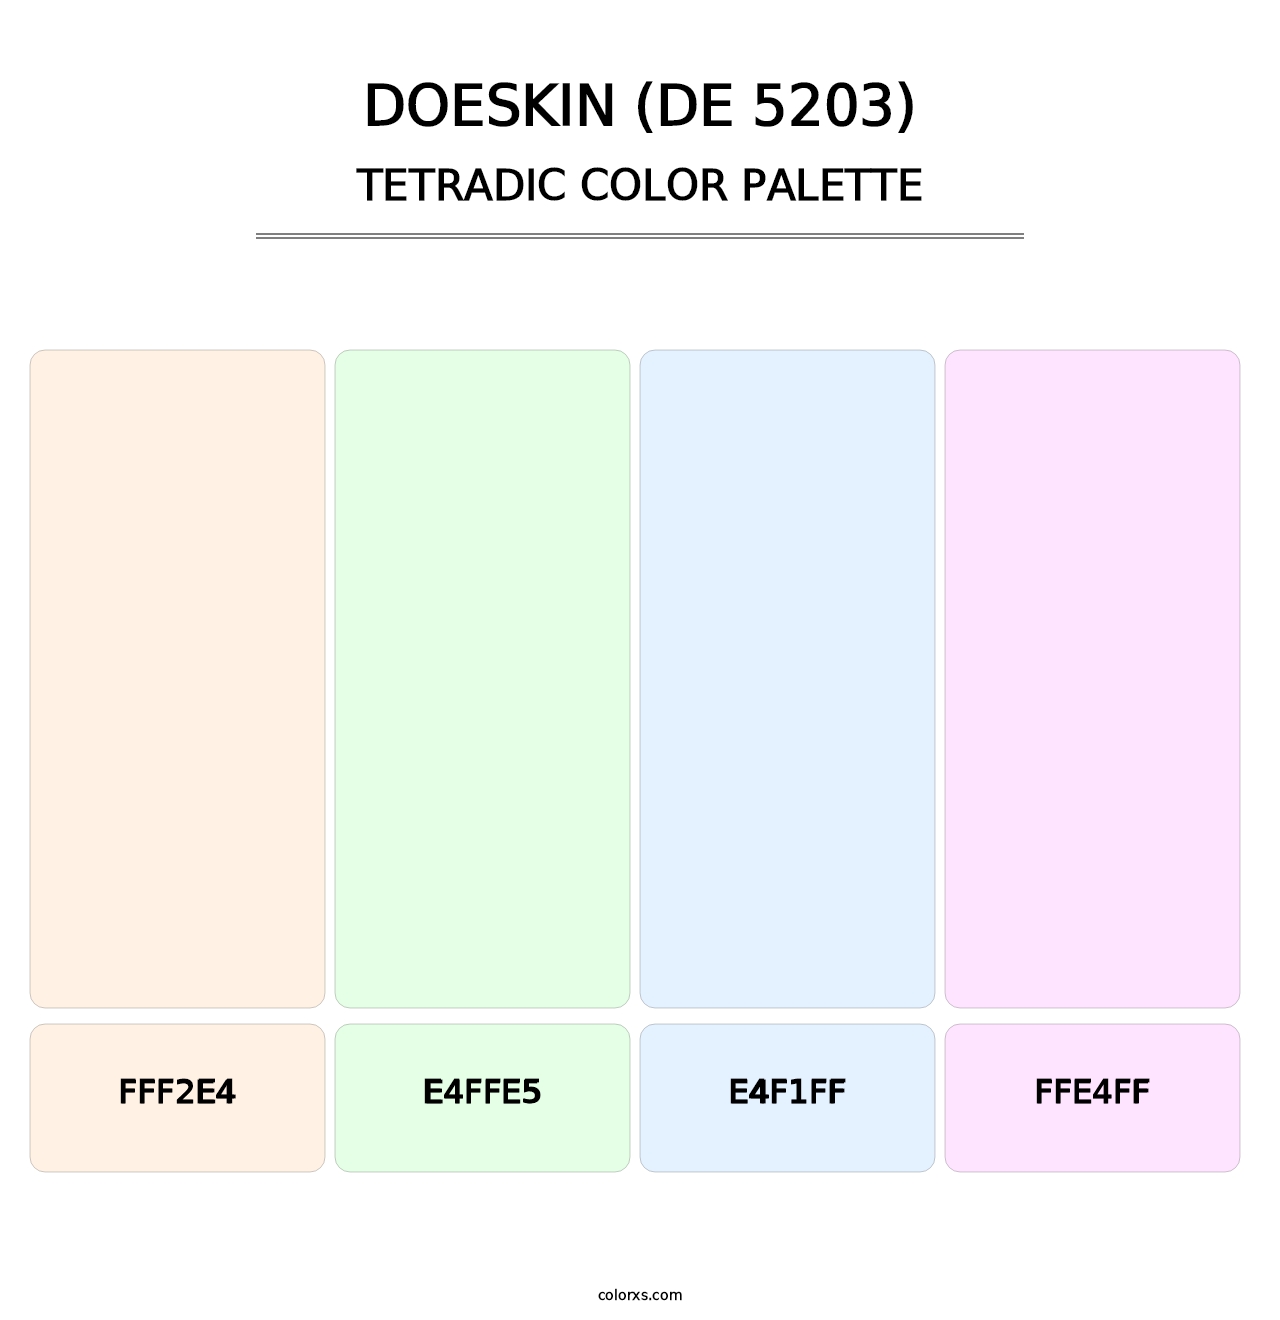 Doeskin (DE 5203) - Tetradic Color Palette